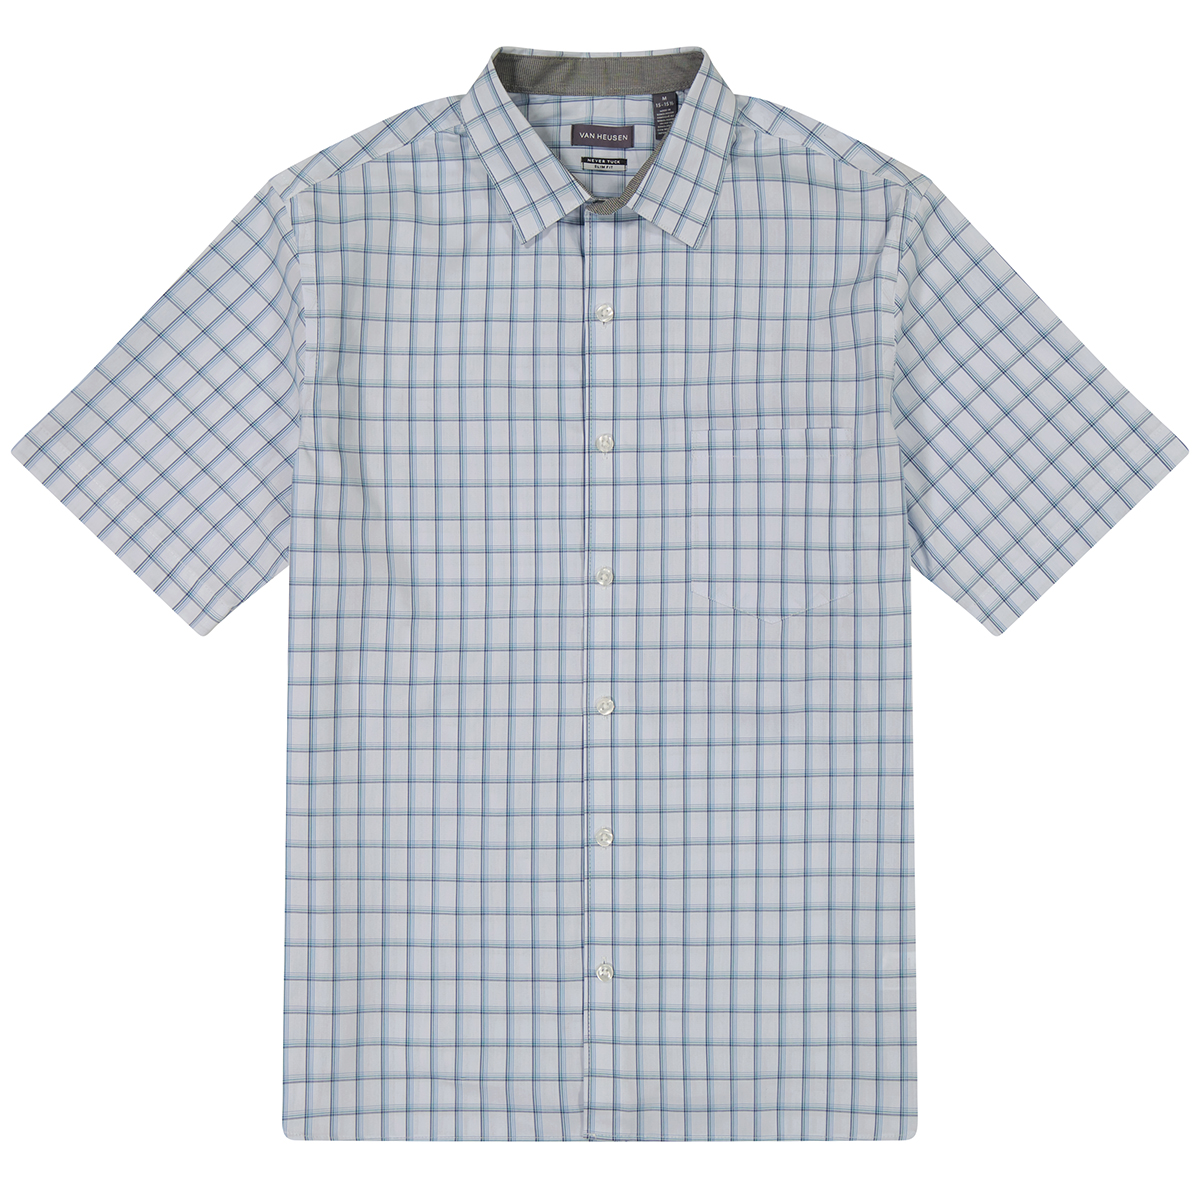 Van Heusen Men's Essential Woven Short-Sleeve Shirt